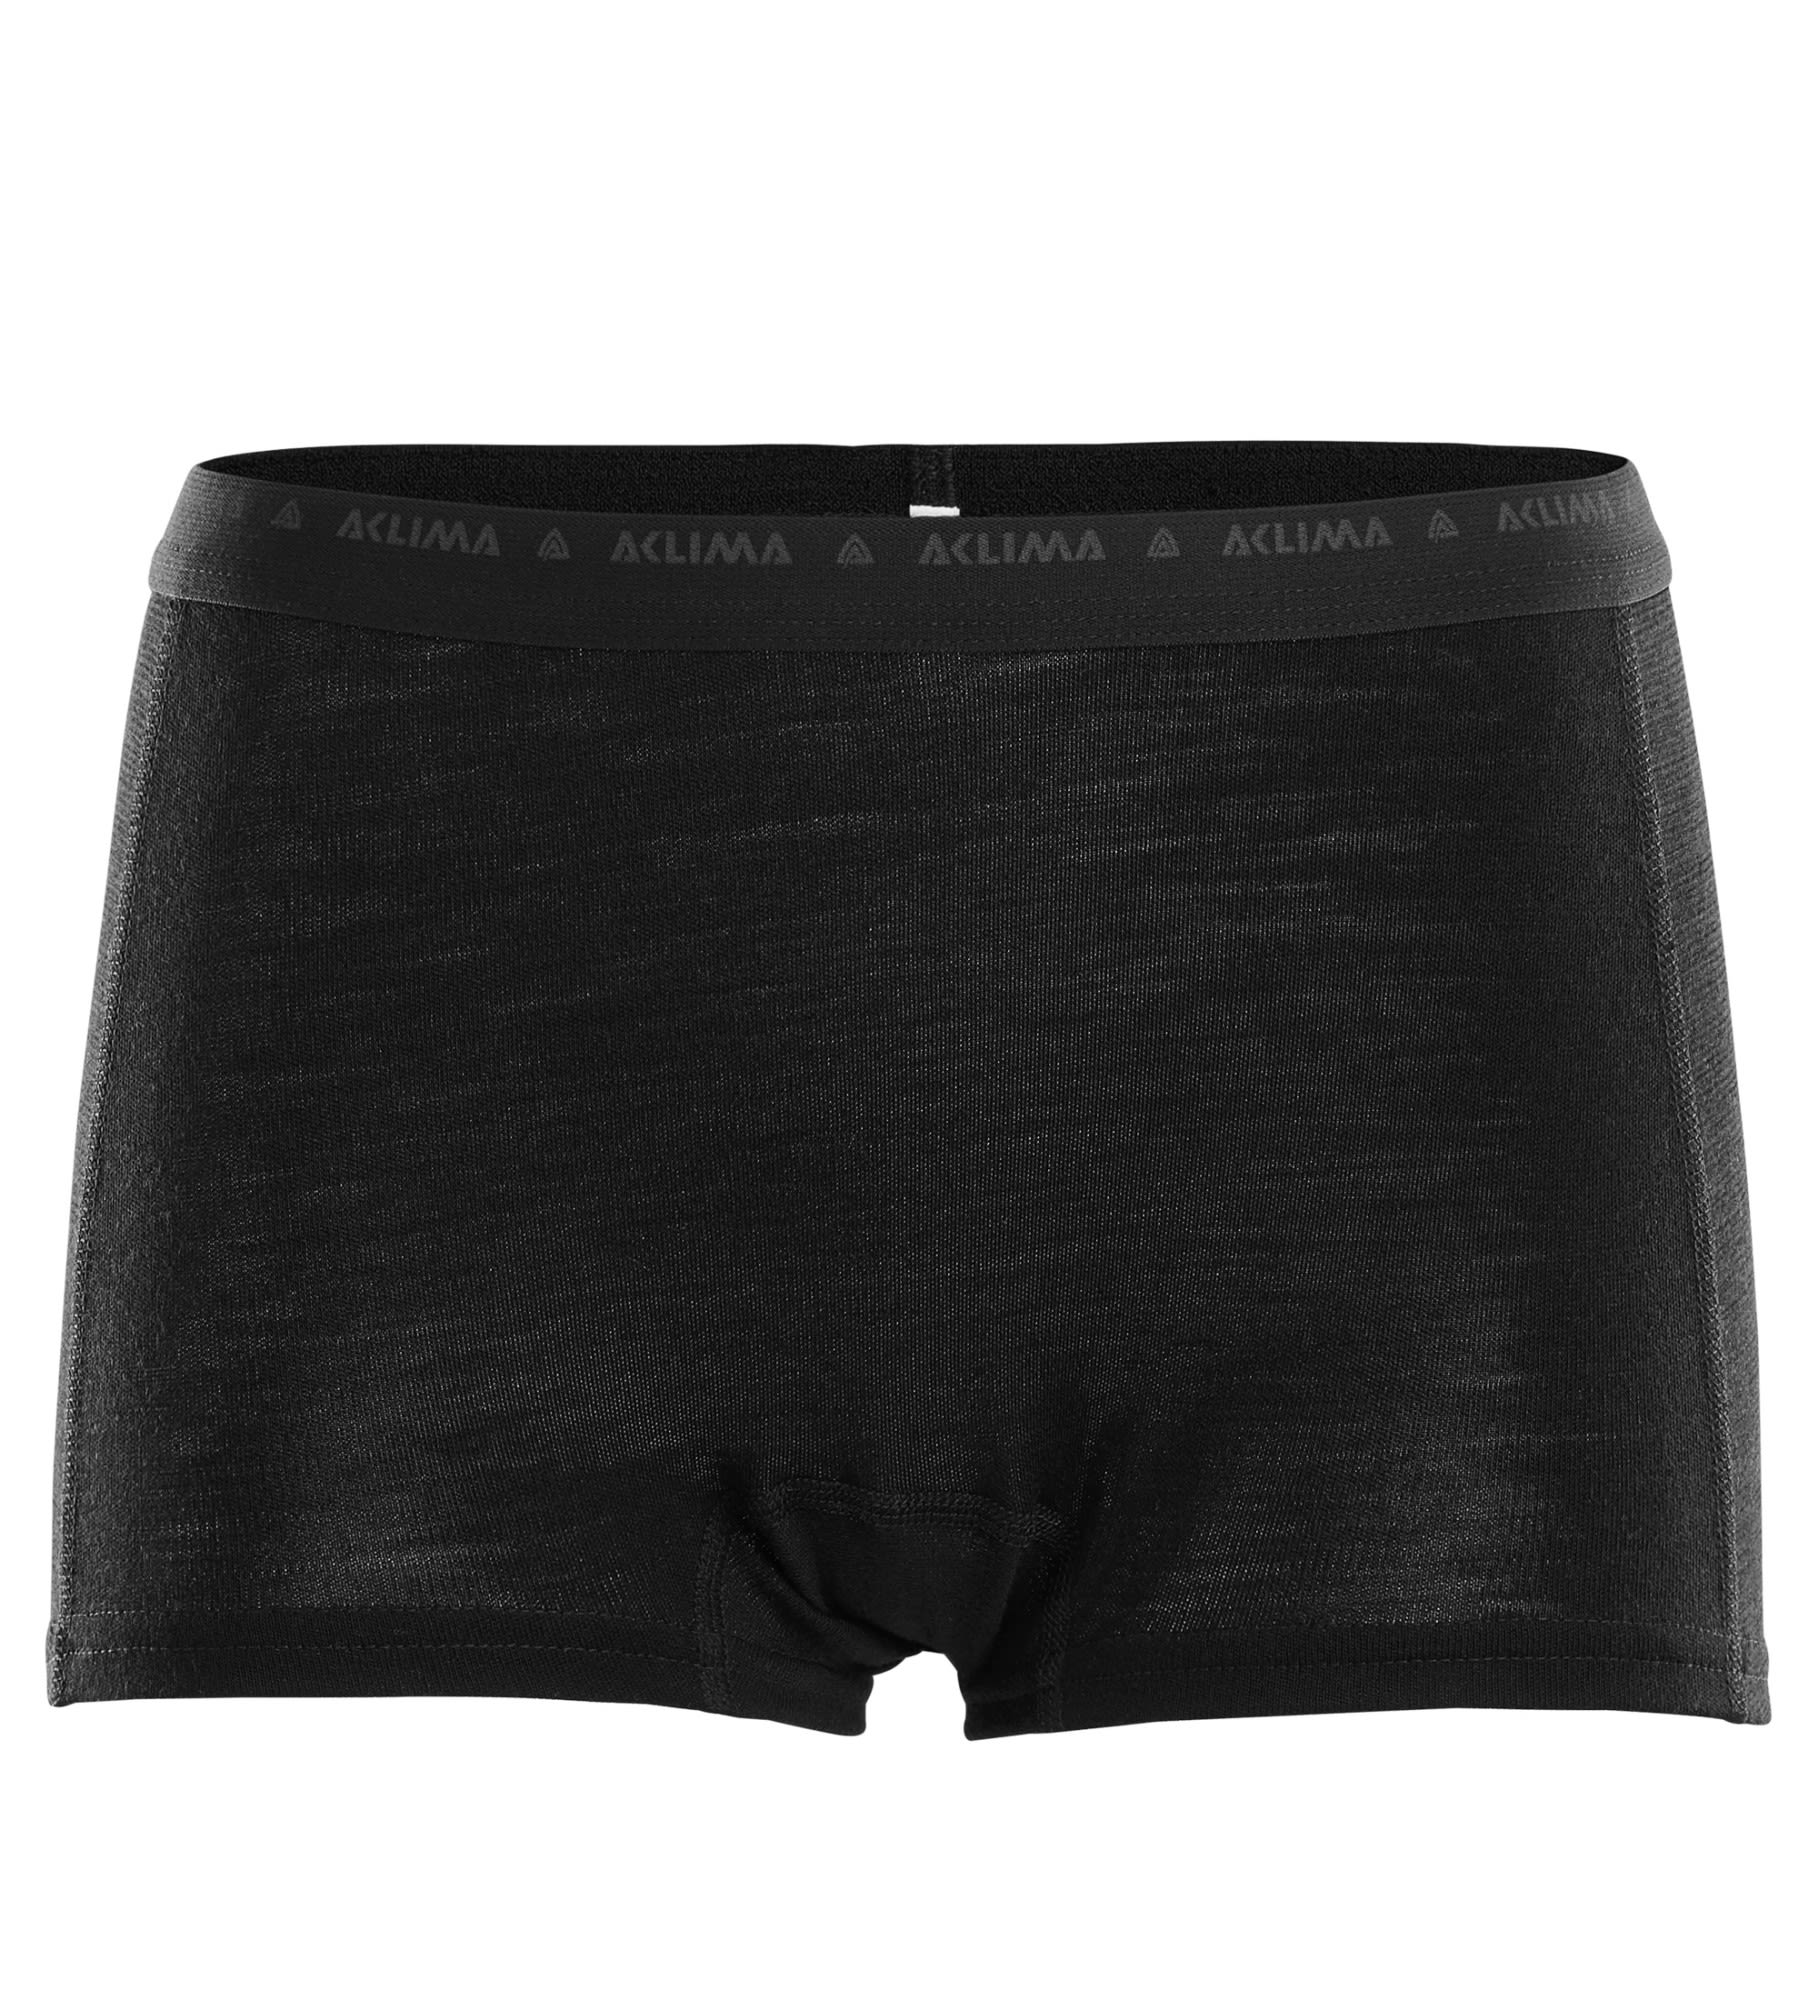 Aclima Warmwool Hipster Schwarz- Female Merino Lange Unterhosen- Grsse XS - Farbe Jet Black unter Aclima